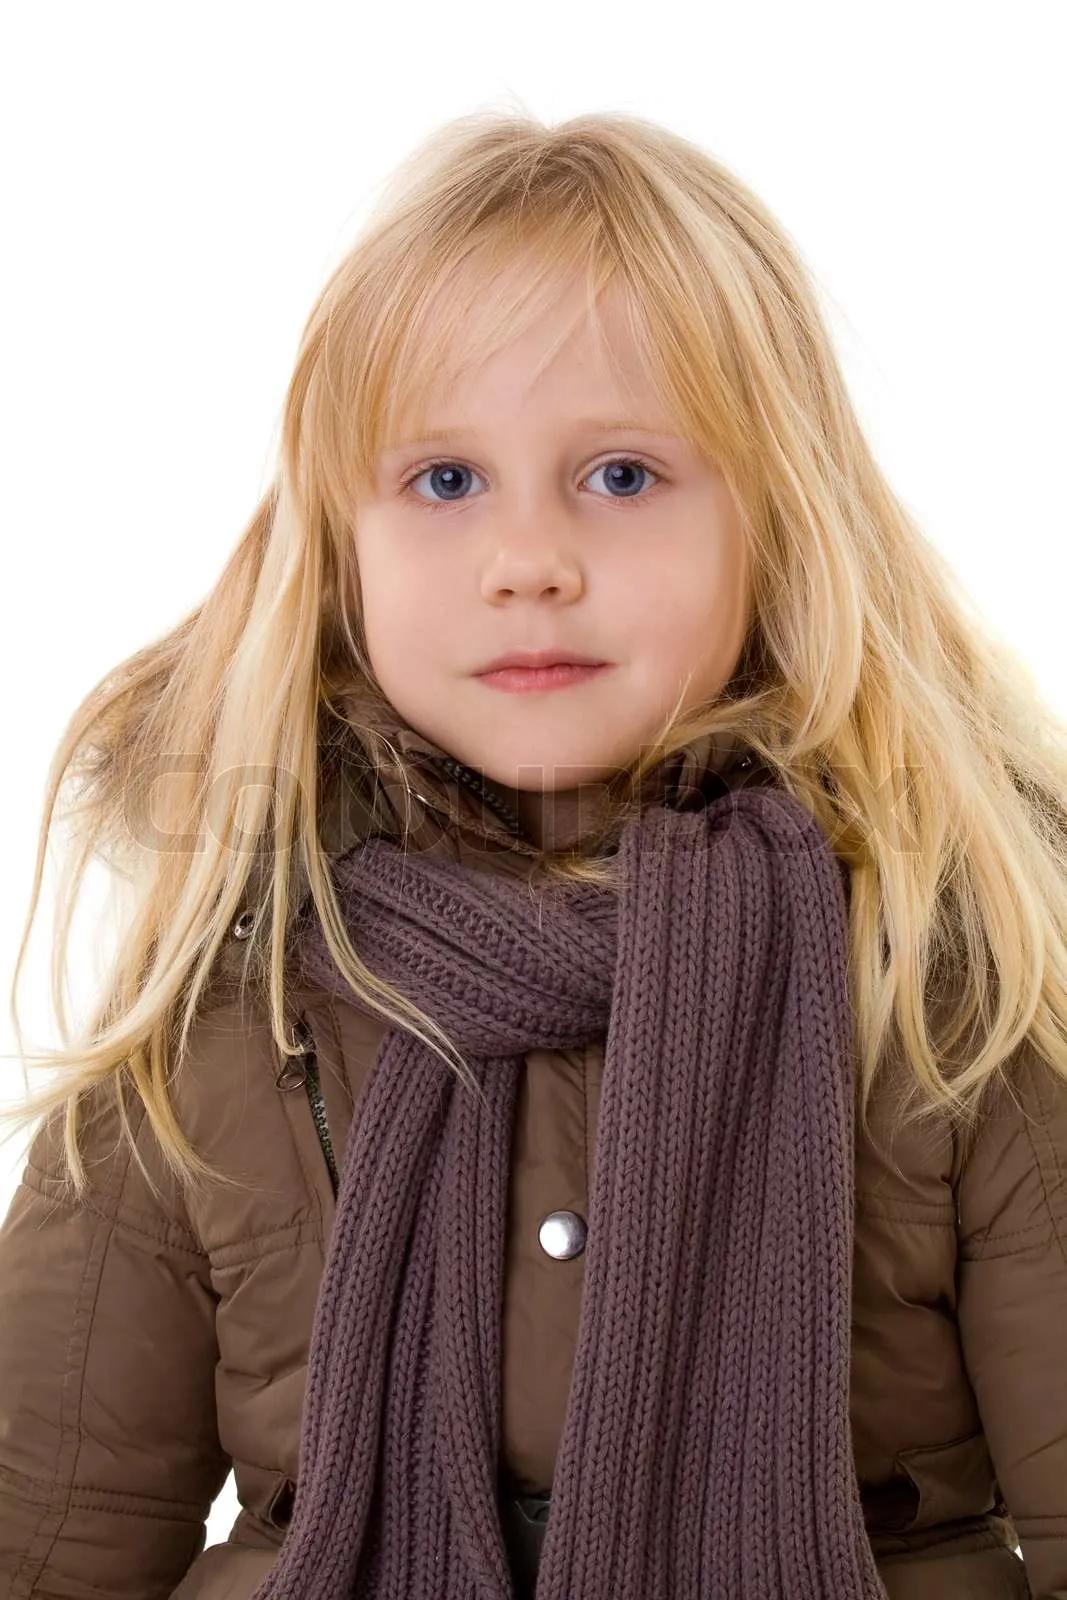 kleine blonde Mädchen - Kind in Straßenkleidung | Stock Bild | Colourbox